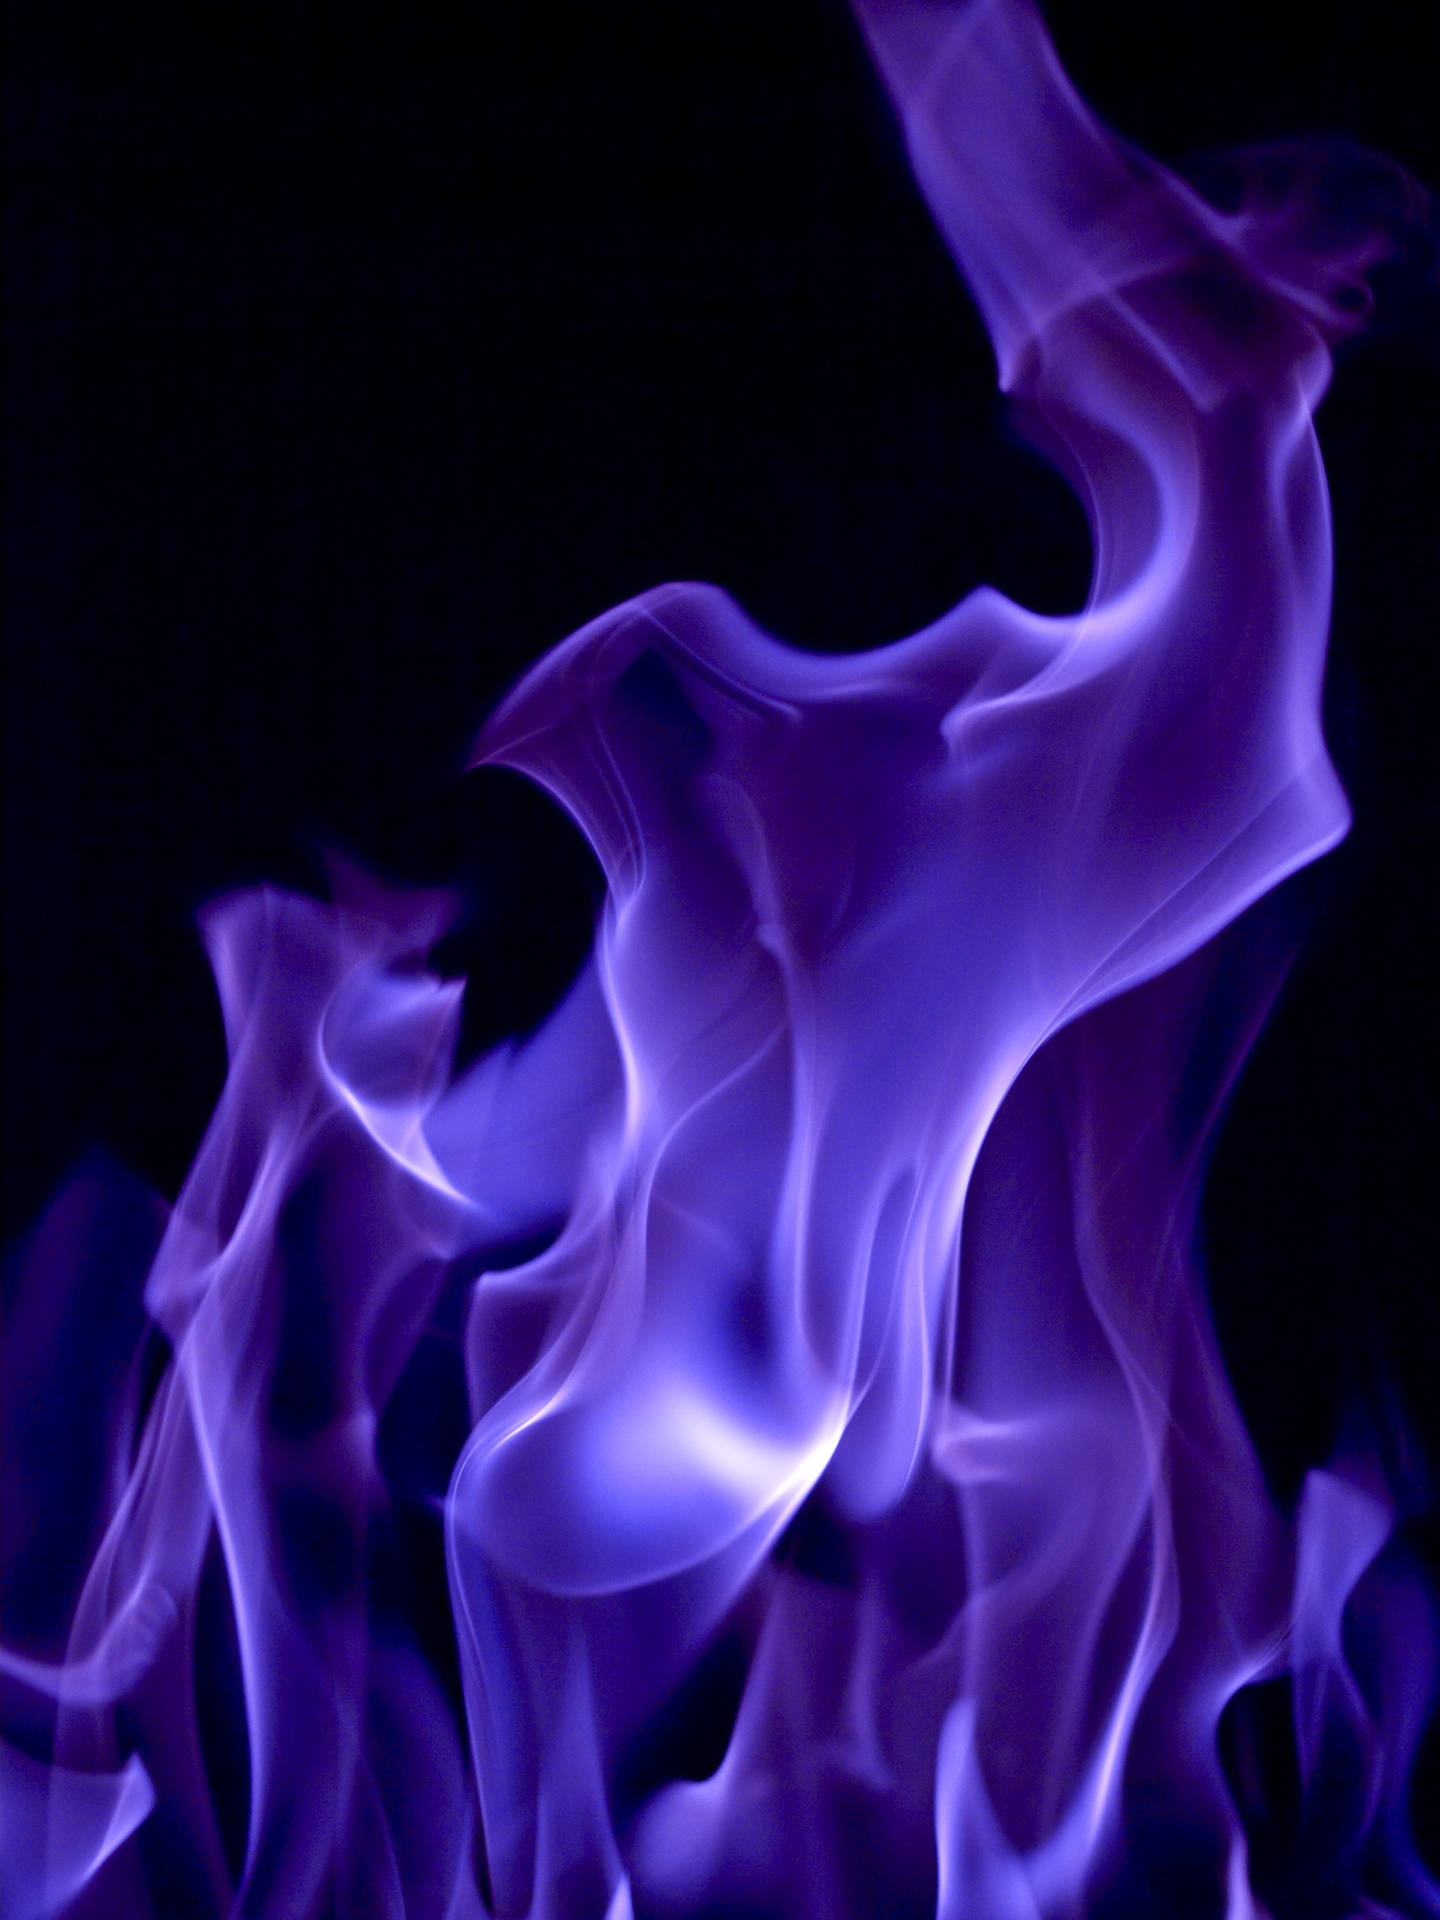 A Purple Smoke Rising Background